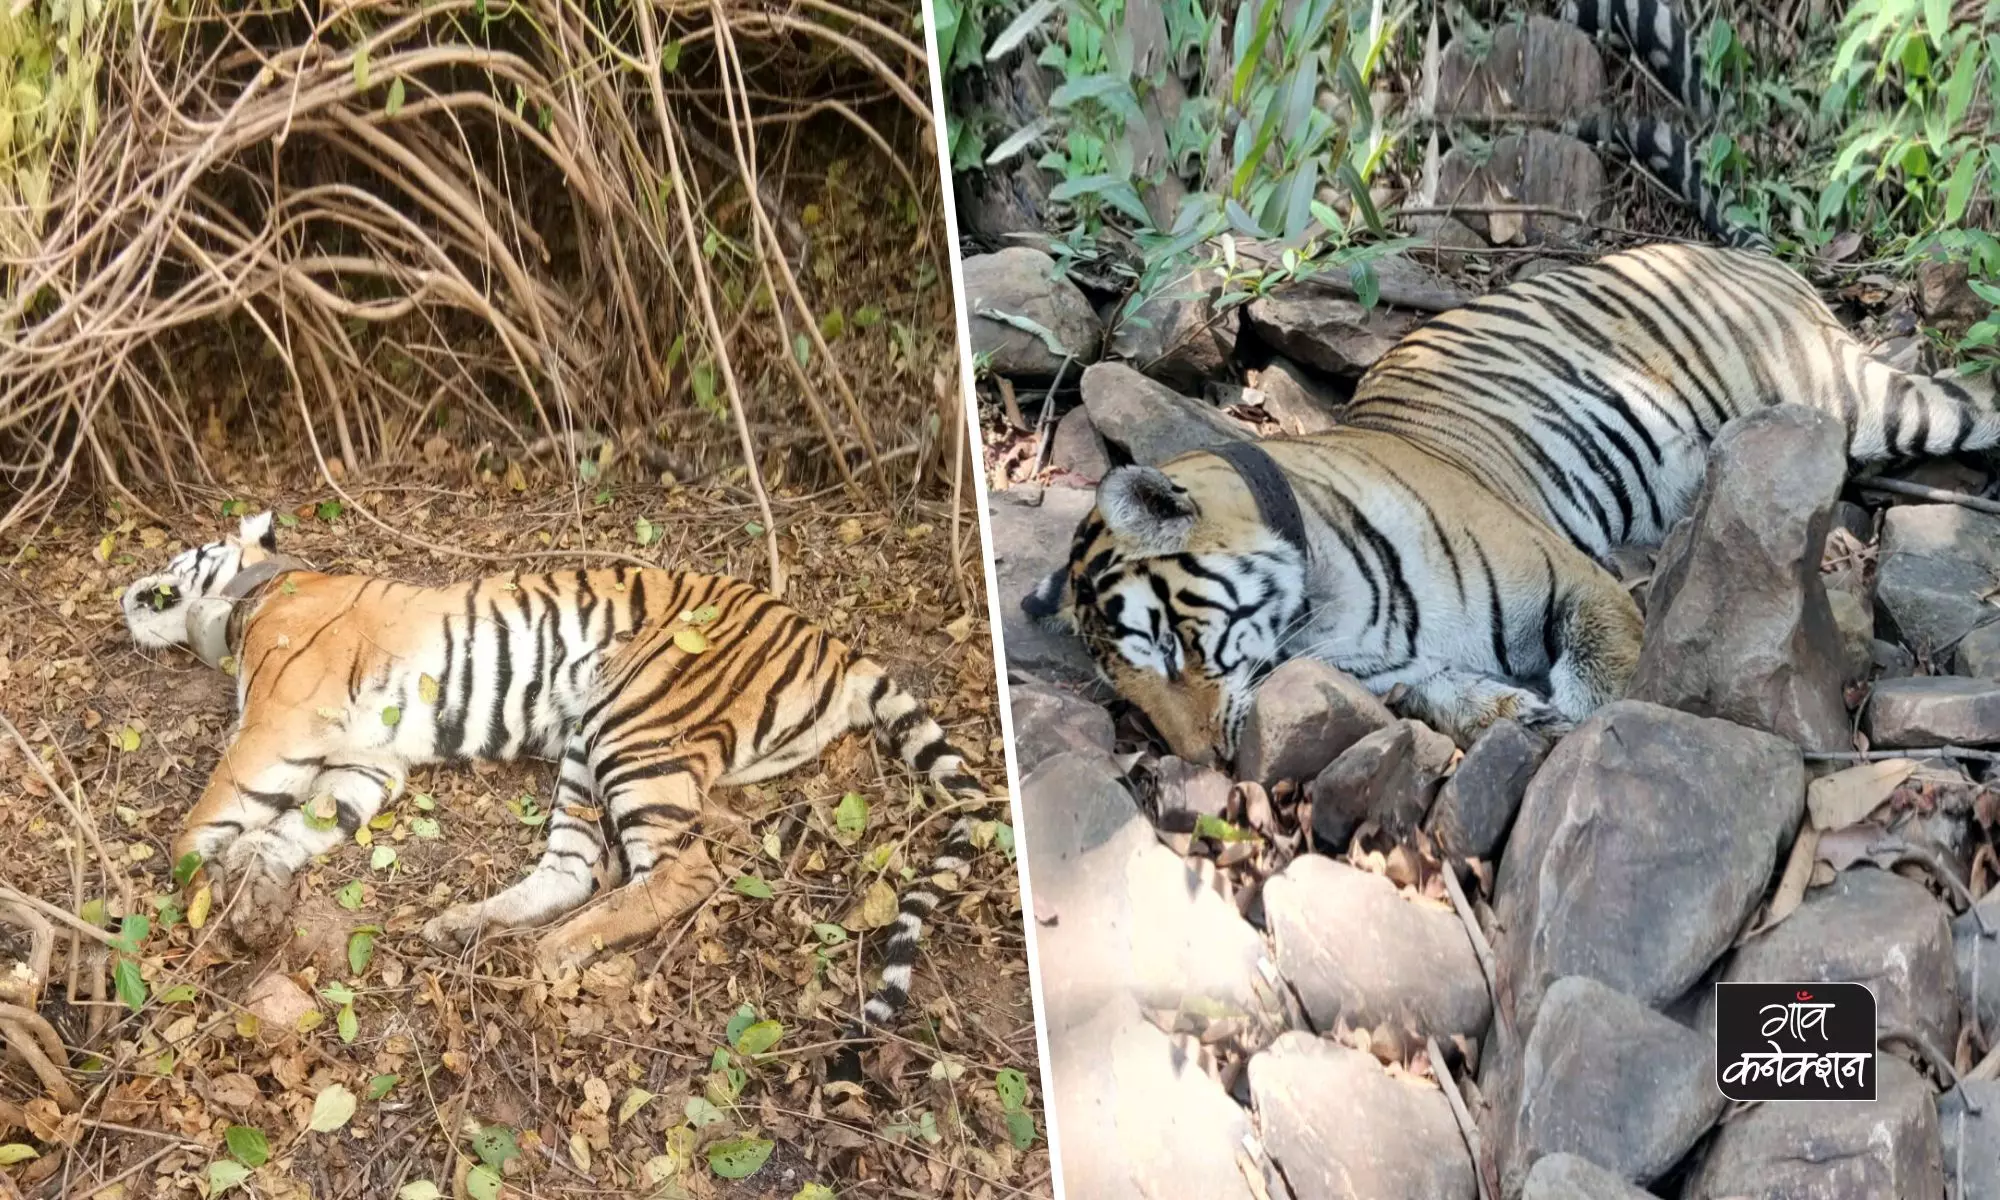 मध्य प्रदेश में 10 दिनों में 2 बाघों के शव मिलने से खलबली, क्या बच पाएगा टाइगर स्टेट का दर्ज़ा?